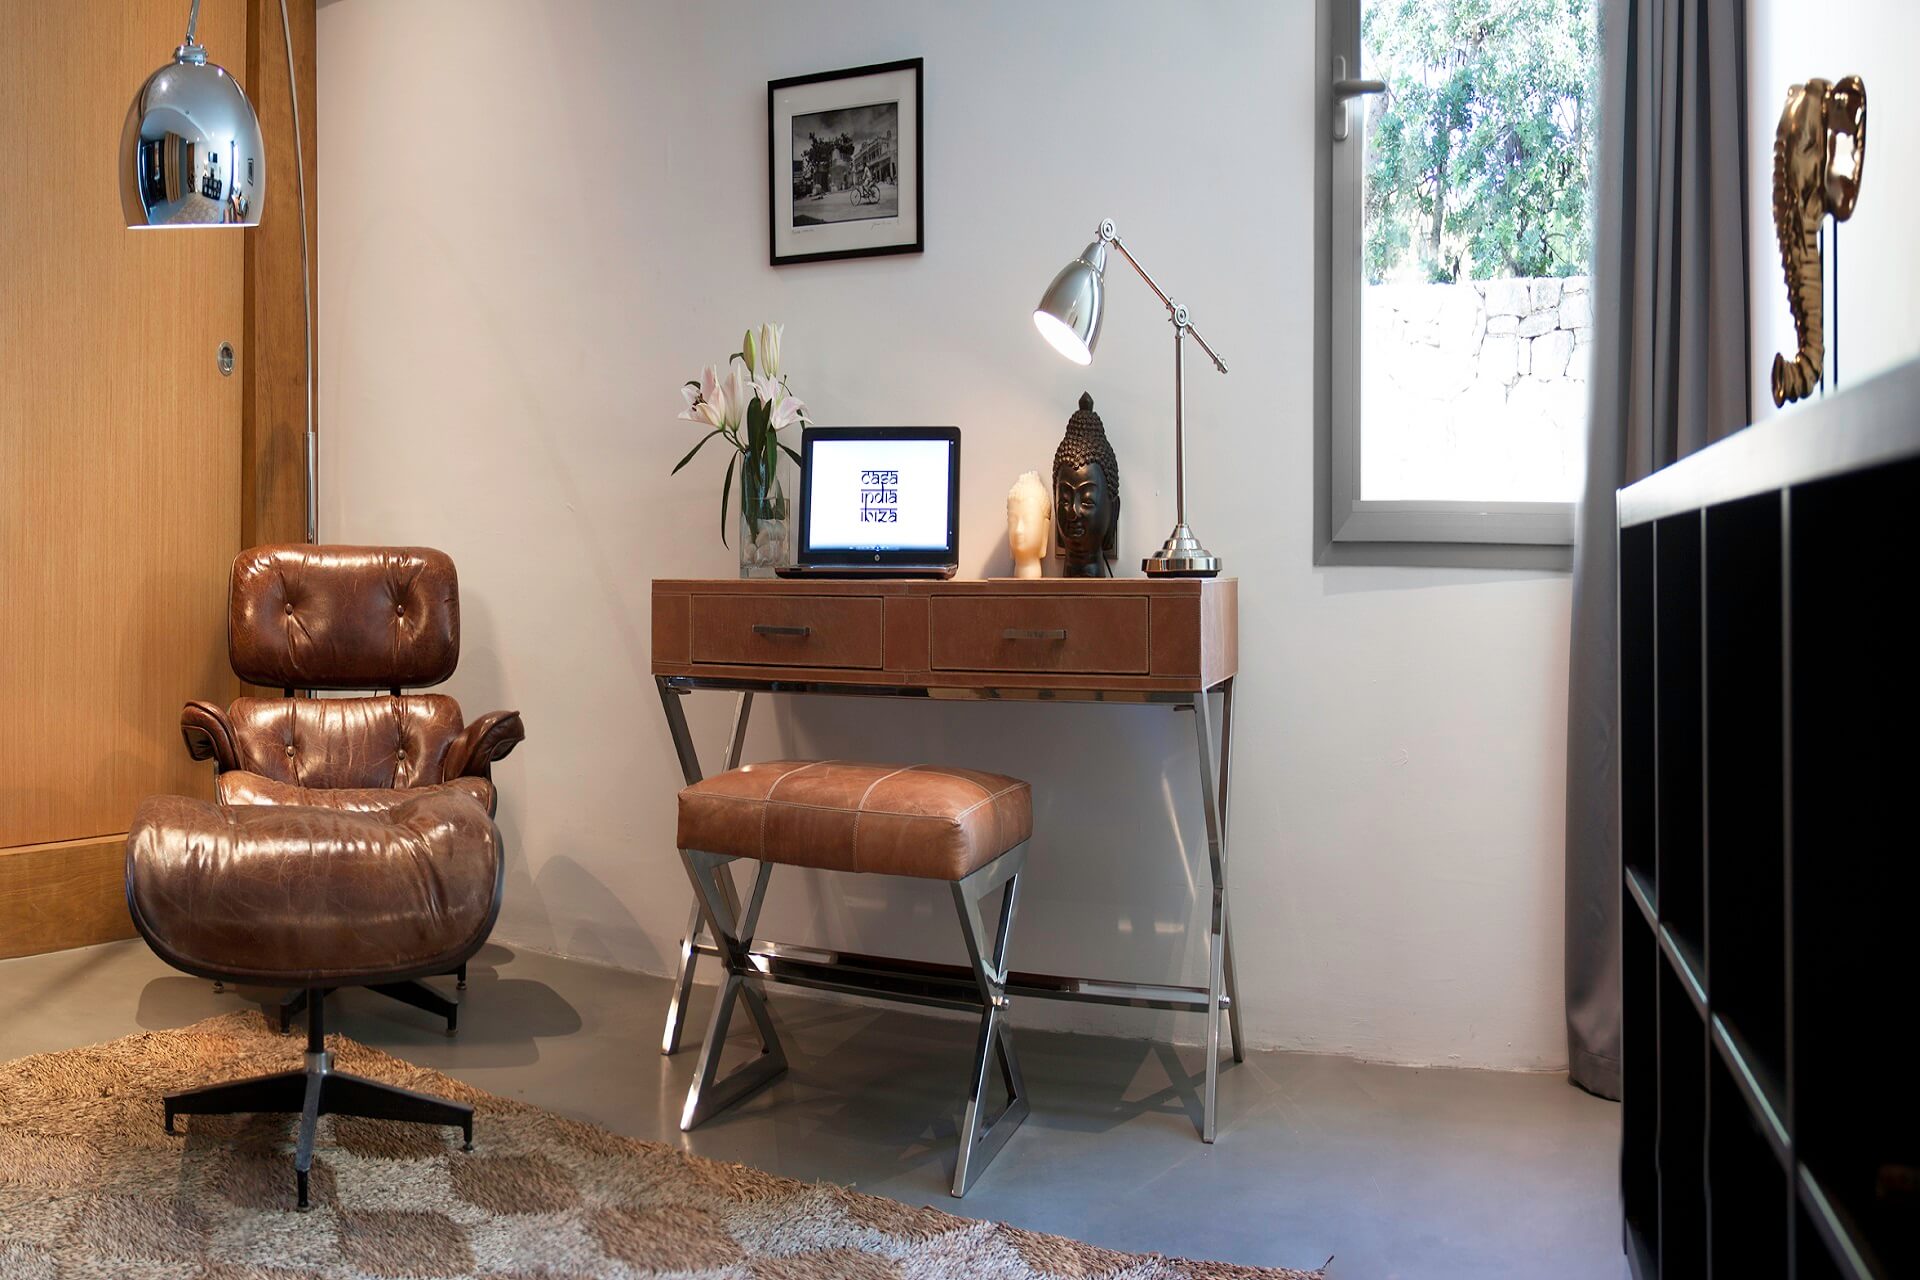 Casa India Ibiza - Office or study room